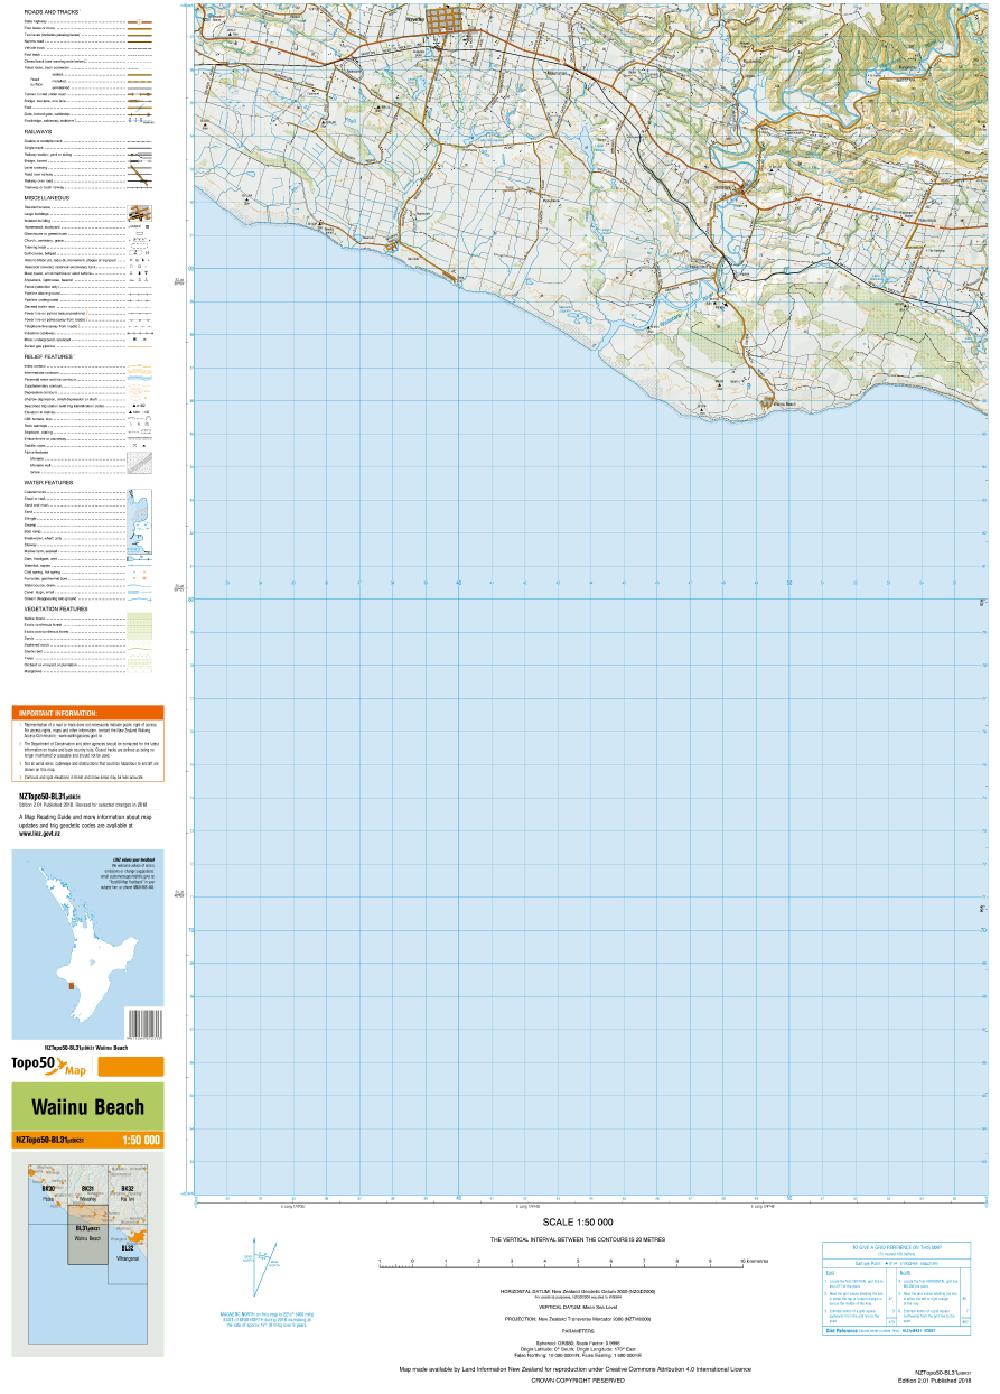 Topo map of Waiinu Beach